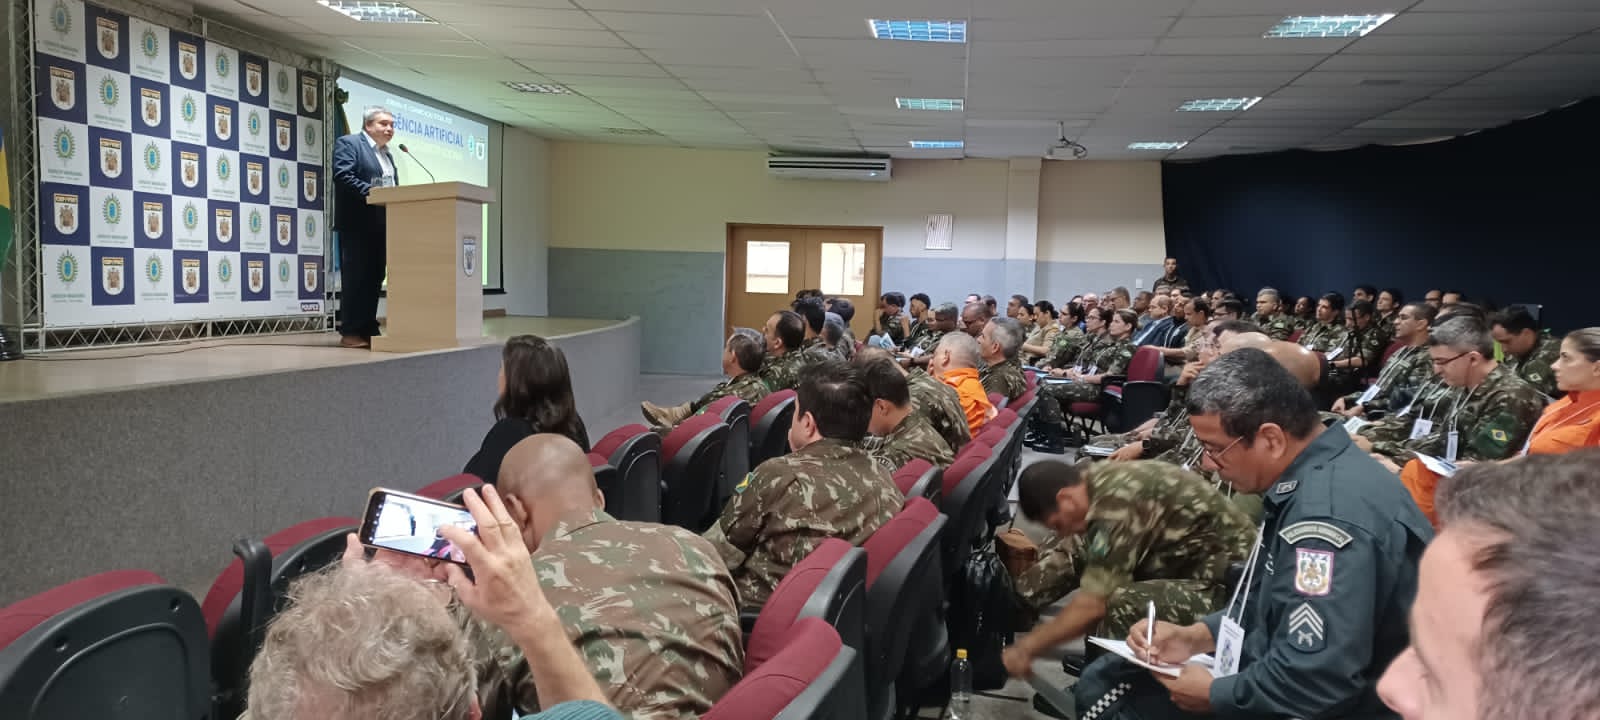 Inteligência Artificial: professor da UFMA realiza palestra em evento nacional de comunicação do exército, no Rio de Janeiro